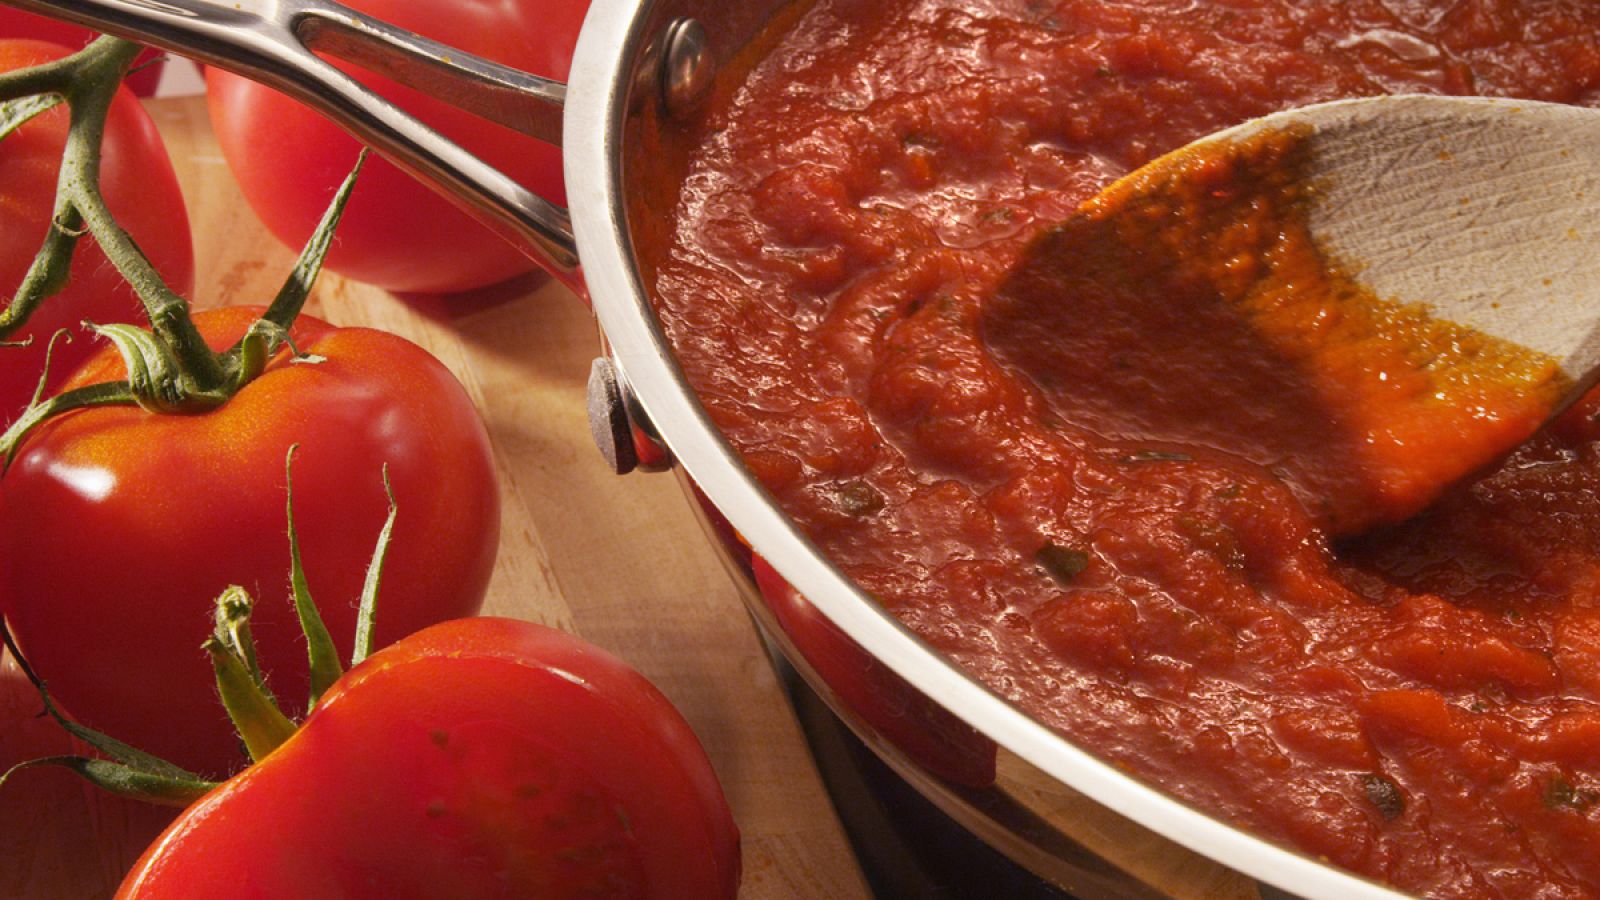 Acompañar dietas ricas en probióticos con tomate frito potencia su carácter beneficioso.